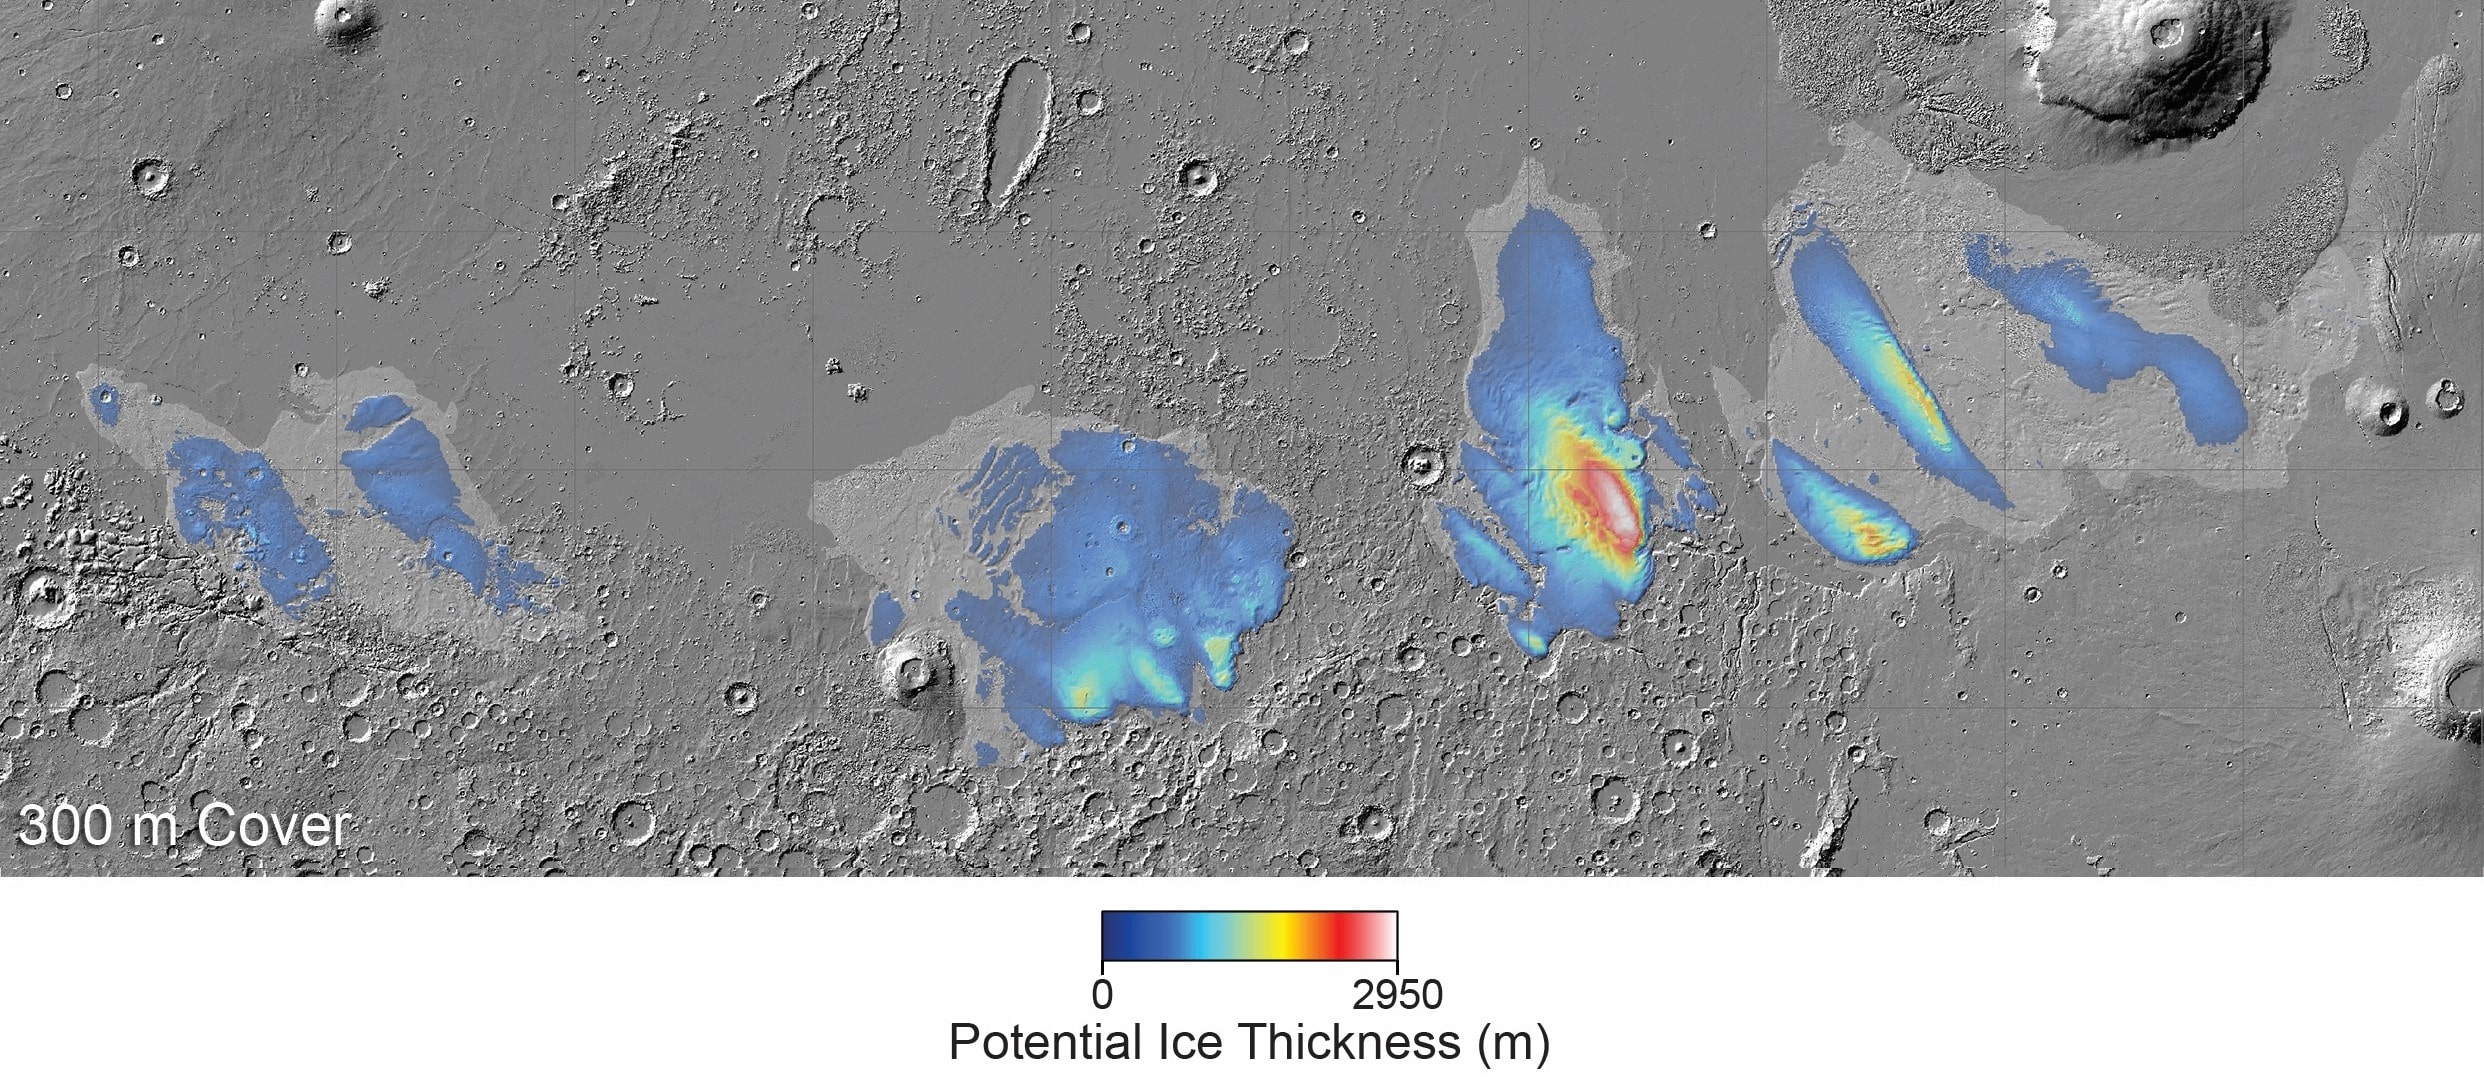 Suspeita-se que seja encontrado gelo em um pequeno oceano sob a superfície de Marte | Tempos altos